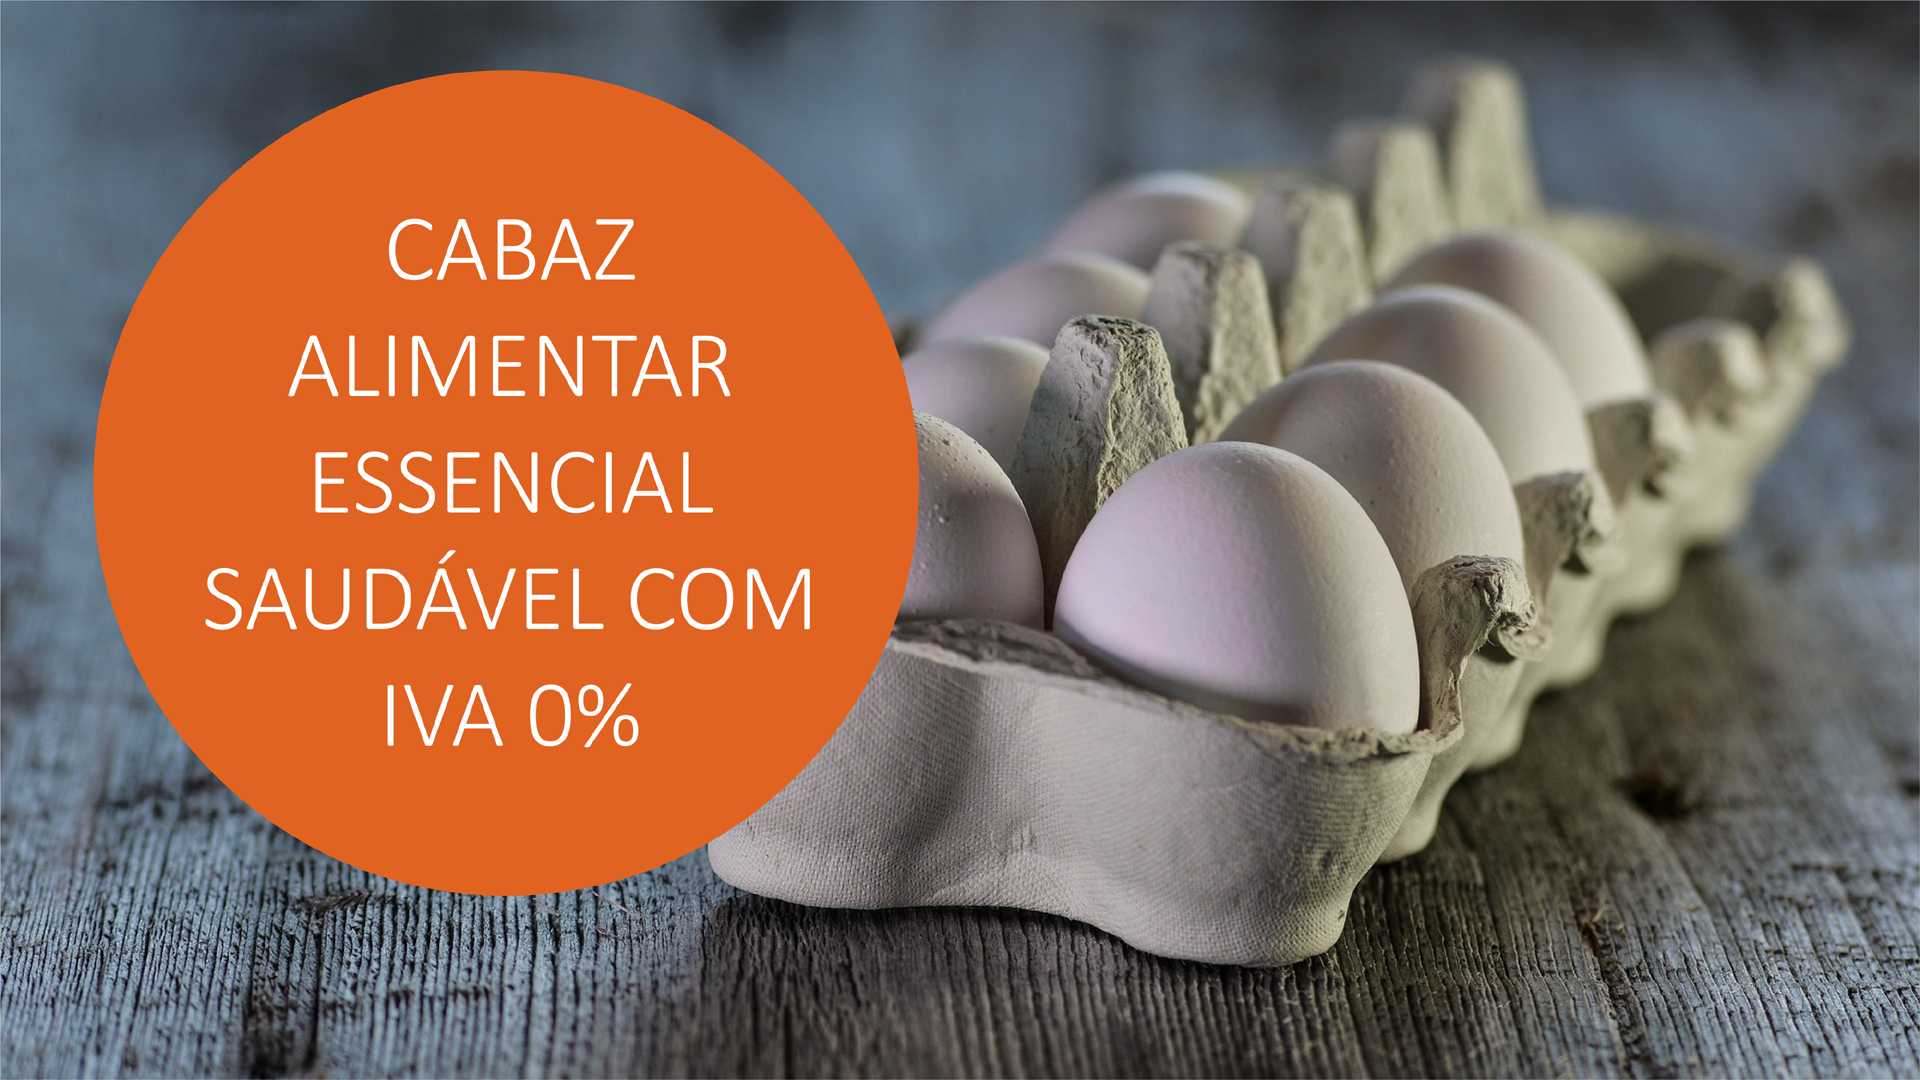 Cabaz Alimentar Essencial Saudável com IVA 0%